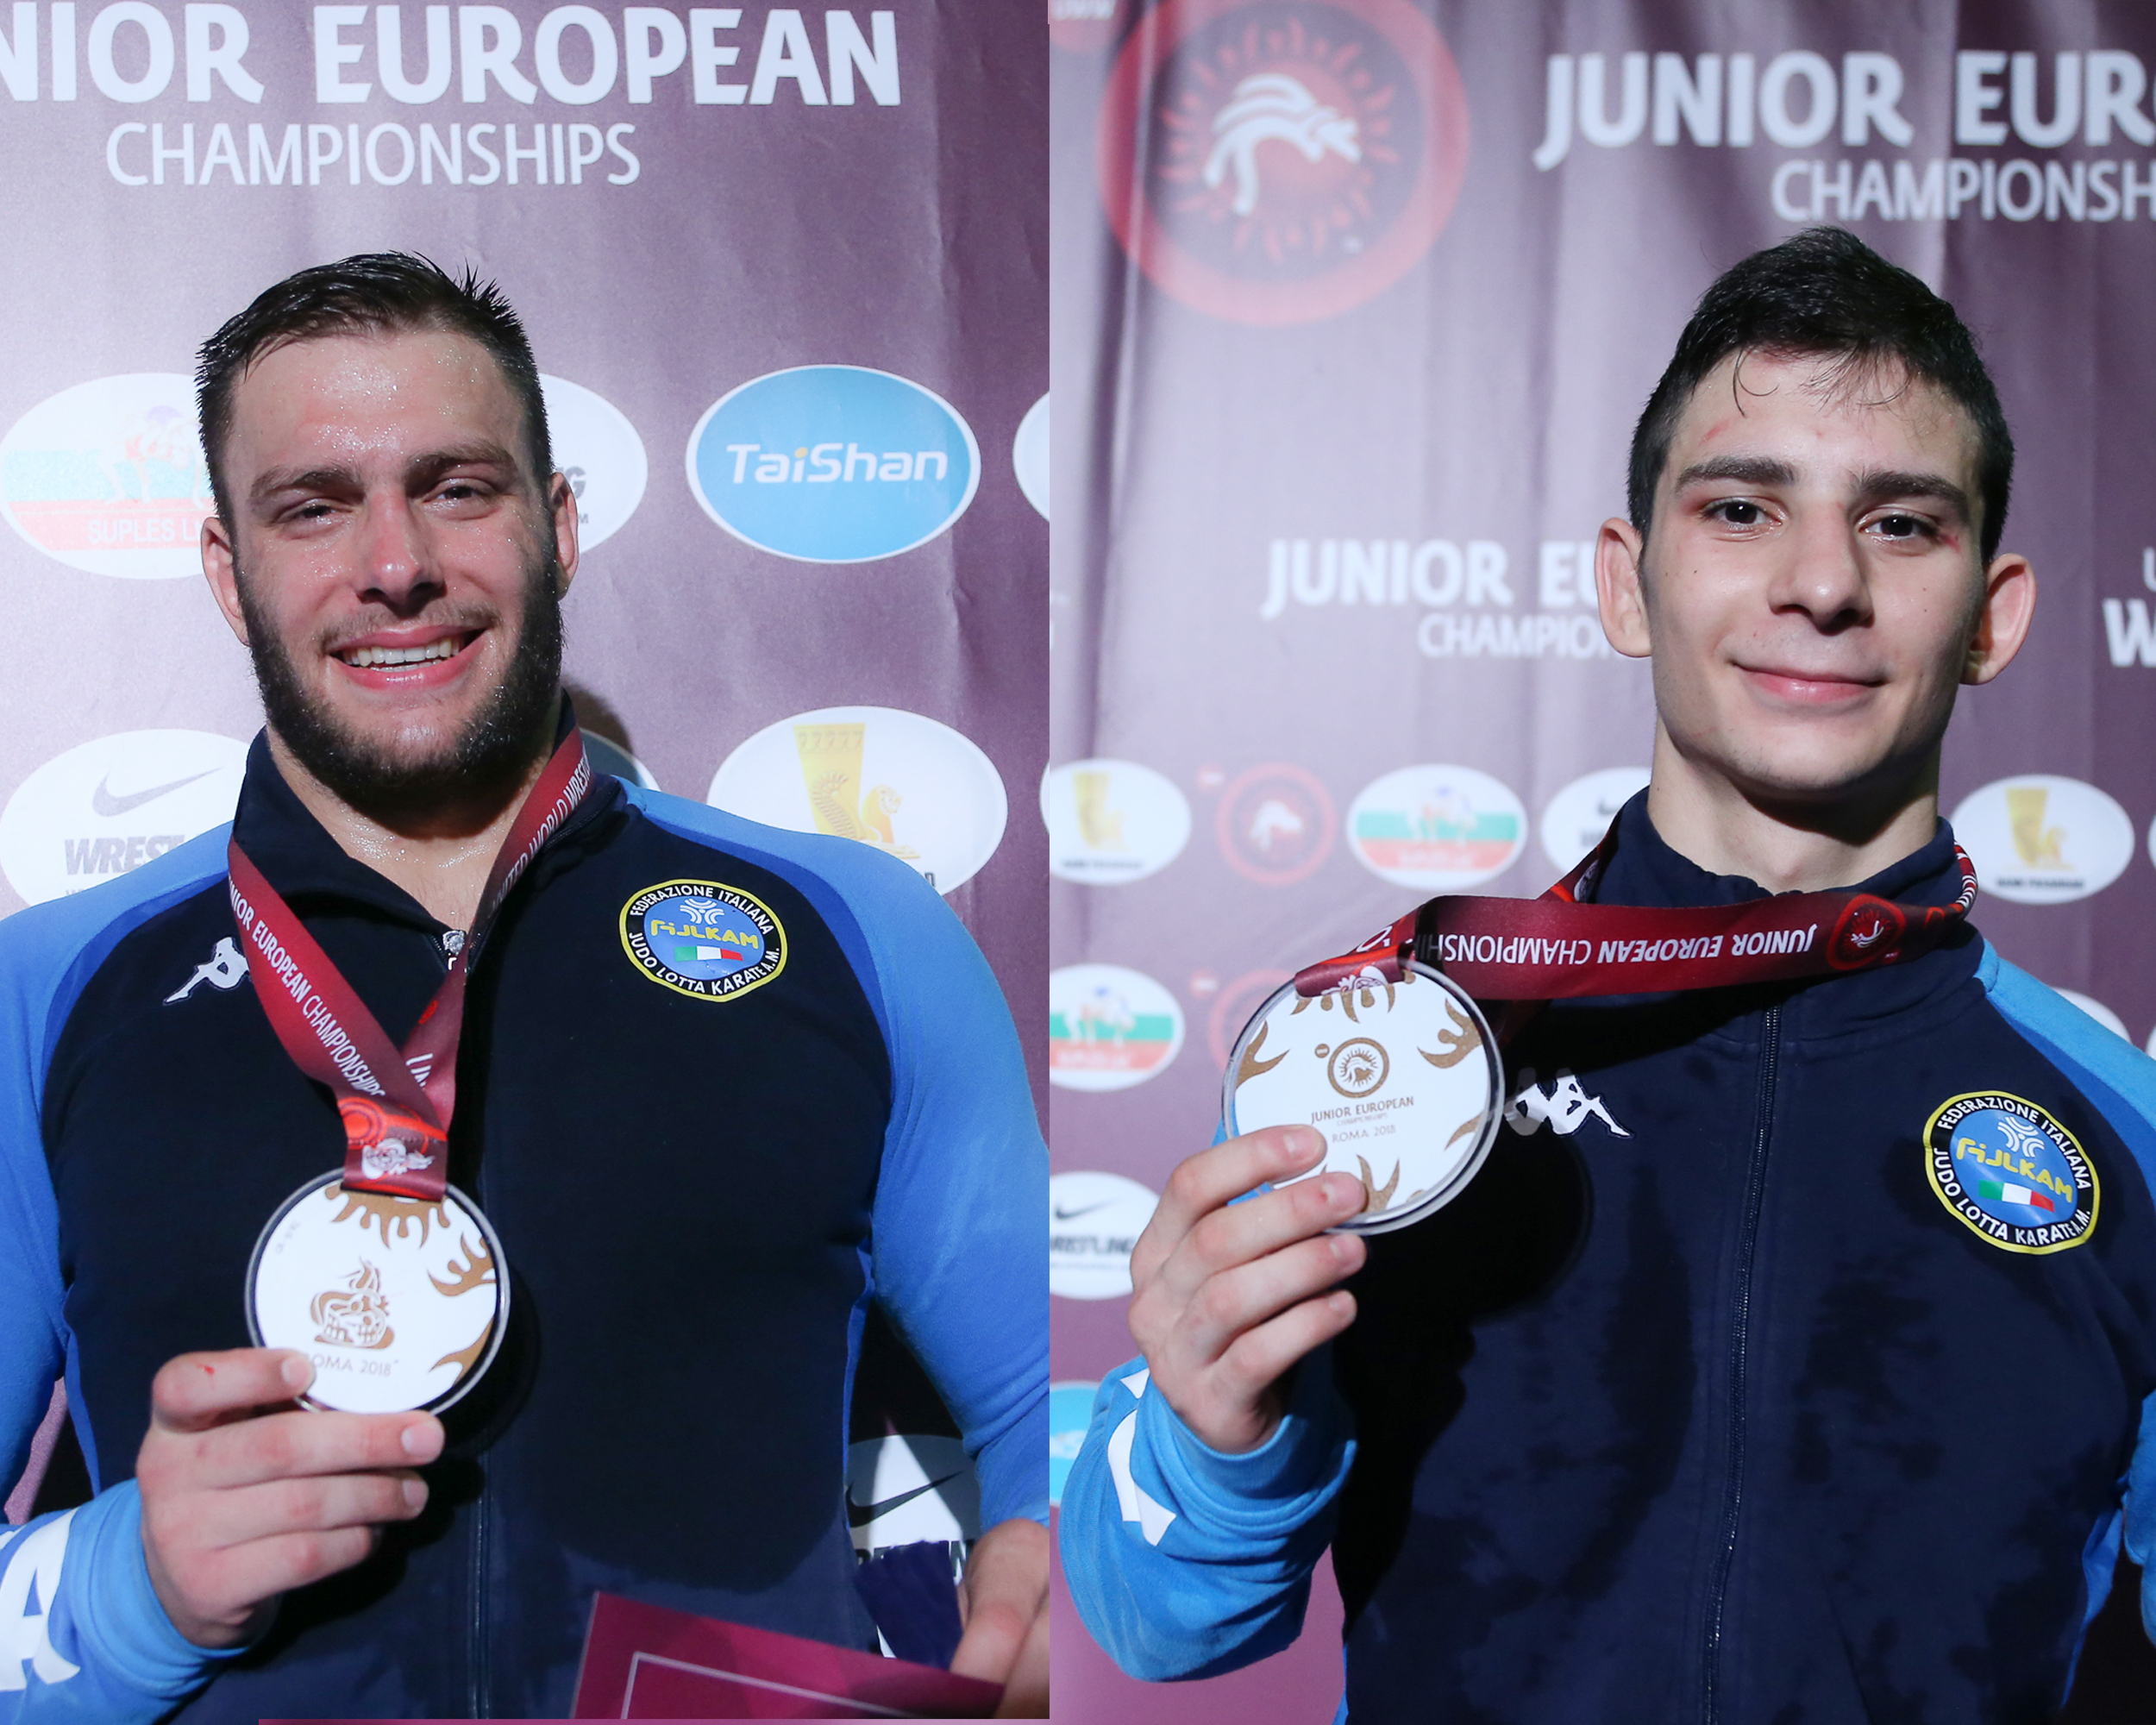 Europei Juniores 2018: Sandron e Svaicari di bronzo! Domani Liuzzi per il terzo posto